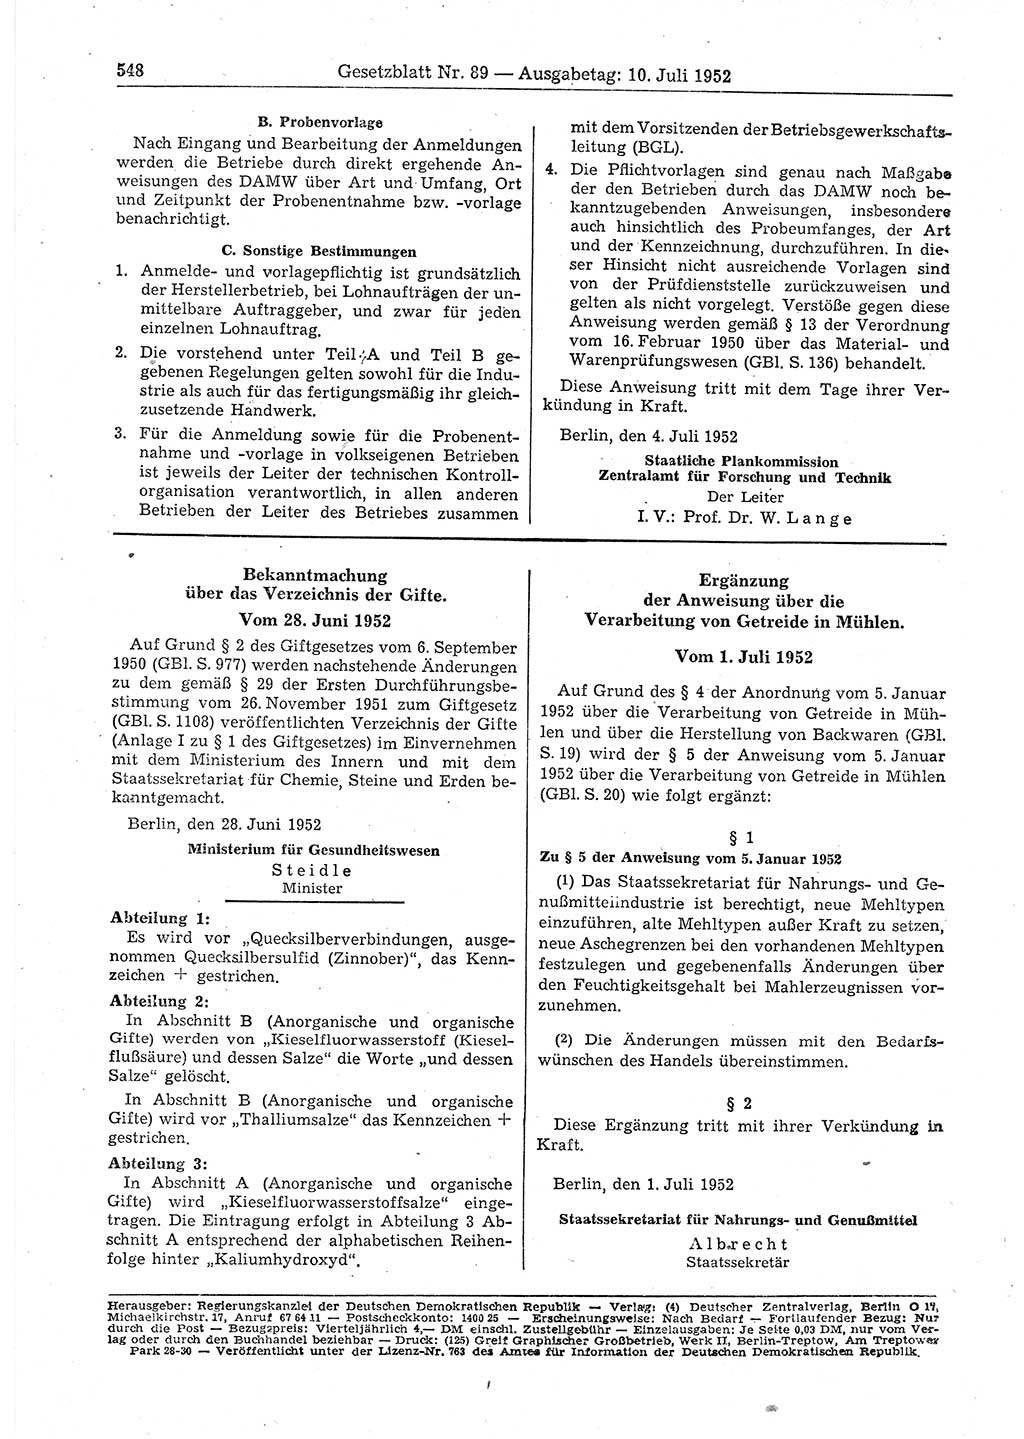 Gesetzblatt (GBl.) der Deutschen Demokratischen Republik (DDR) 1952, Seite 548 (GBl. DDR 1952, S. 548)